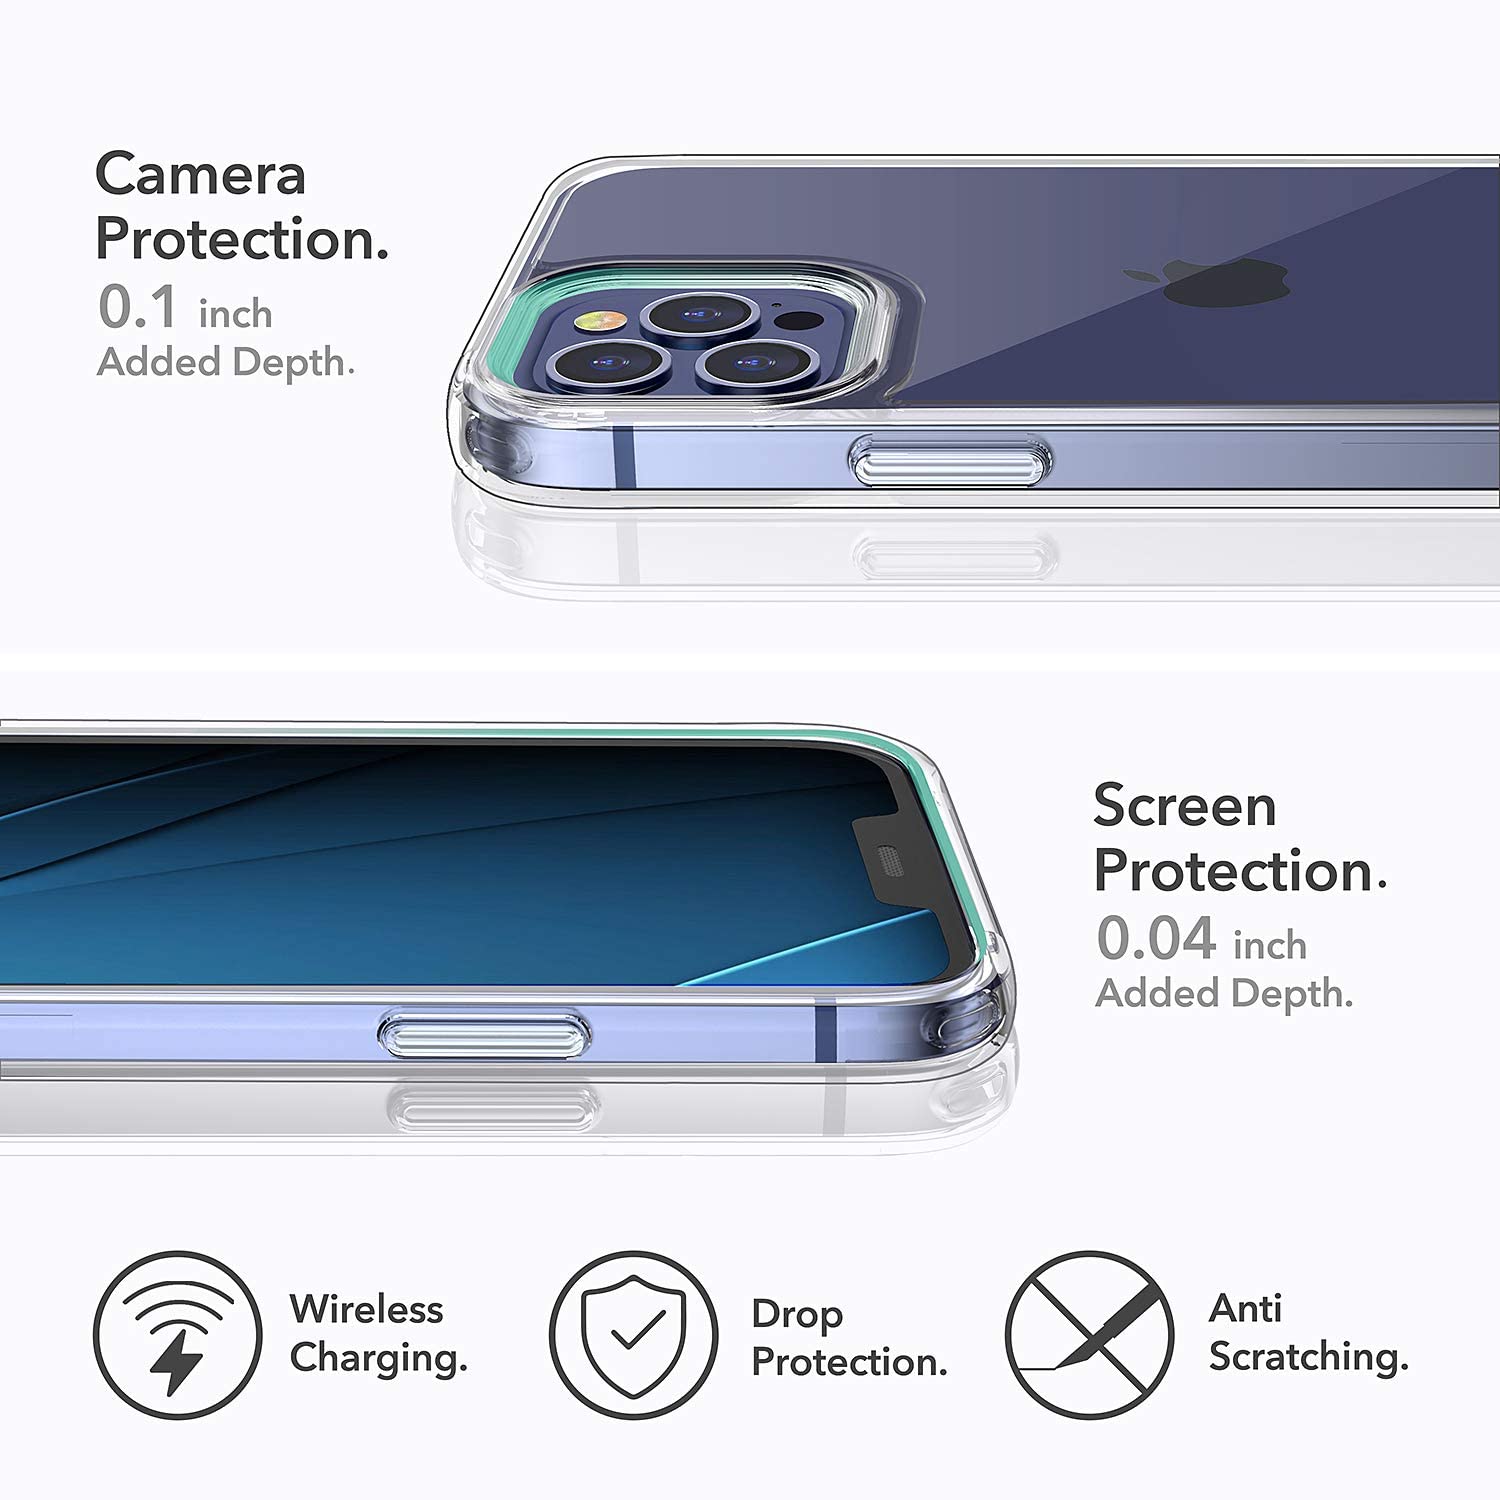 Ốp lưng cho iPhone 12 Pro / iPhone 12 6.1 inch chống sốc siêu mỏng 1mm Hiệu Memumi Glitter Độ trong tuyệt đối, chống trầy xước, chống ố vàng, tản nhiệt tốt - Hàng nhập khẩu